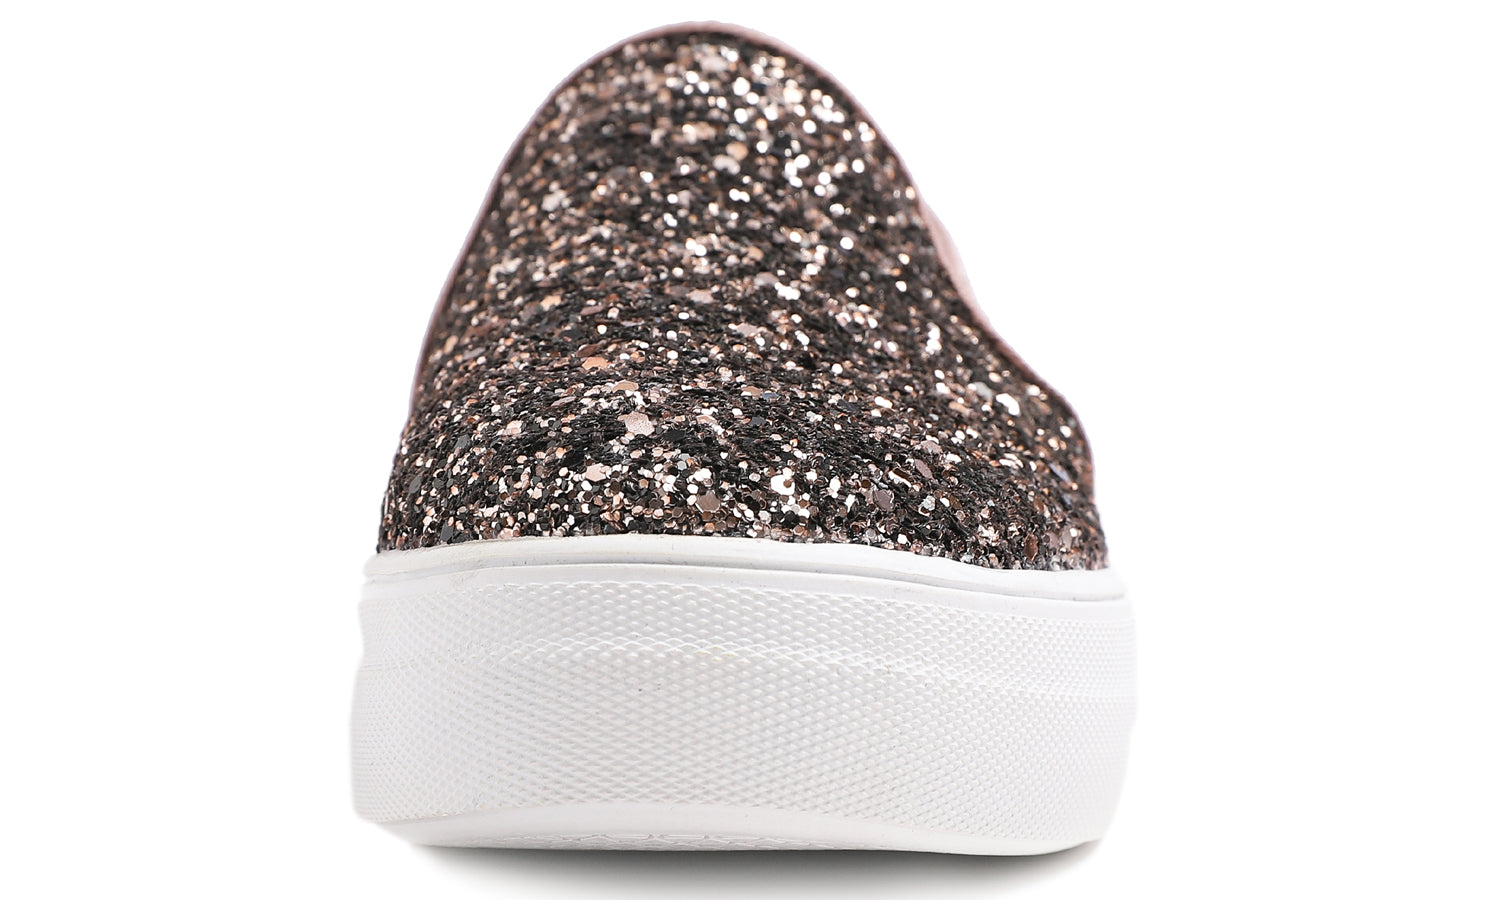 Feversole Women's Glitter Light Brown Platform Slip On Sneaker Casual Flat Loafers